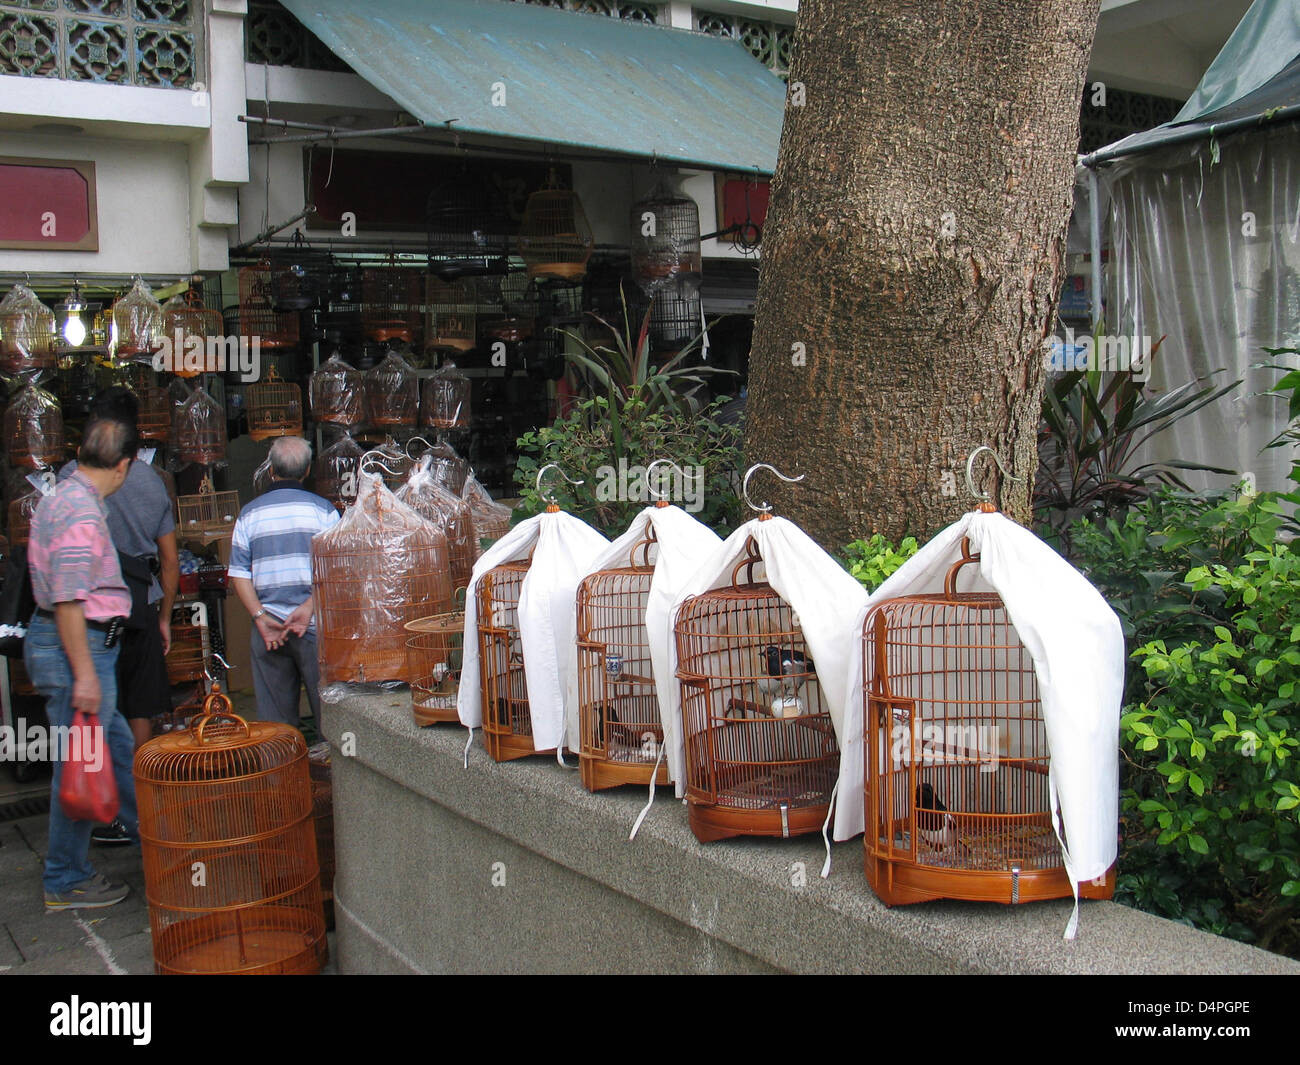 (Datei) - die Datei Bild datiert 25. Oktober 2008 zeigt den Vogel Markt im Stadtteil Kowloon in Hong Kong, China. Der Markt ist sehr beliebt und ein Treffpunkt für Vogelliebhaber. Foto: Frank-Baumgart Stockfoto